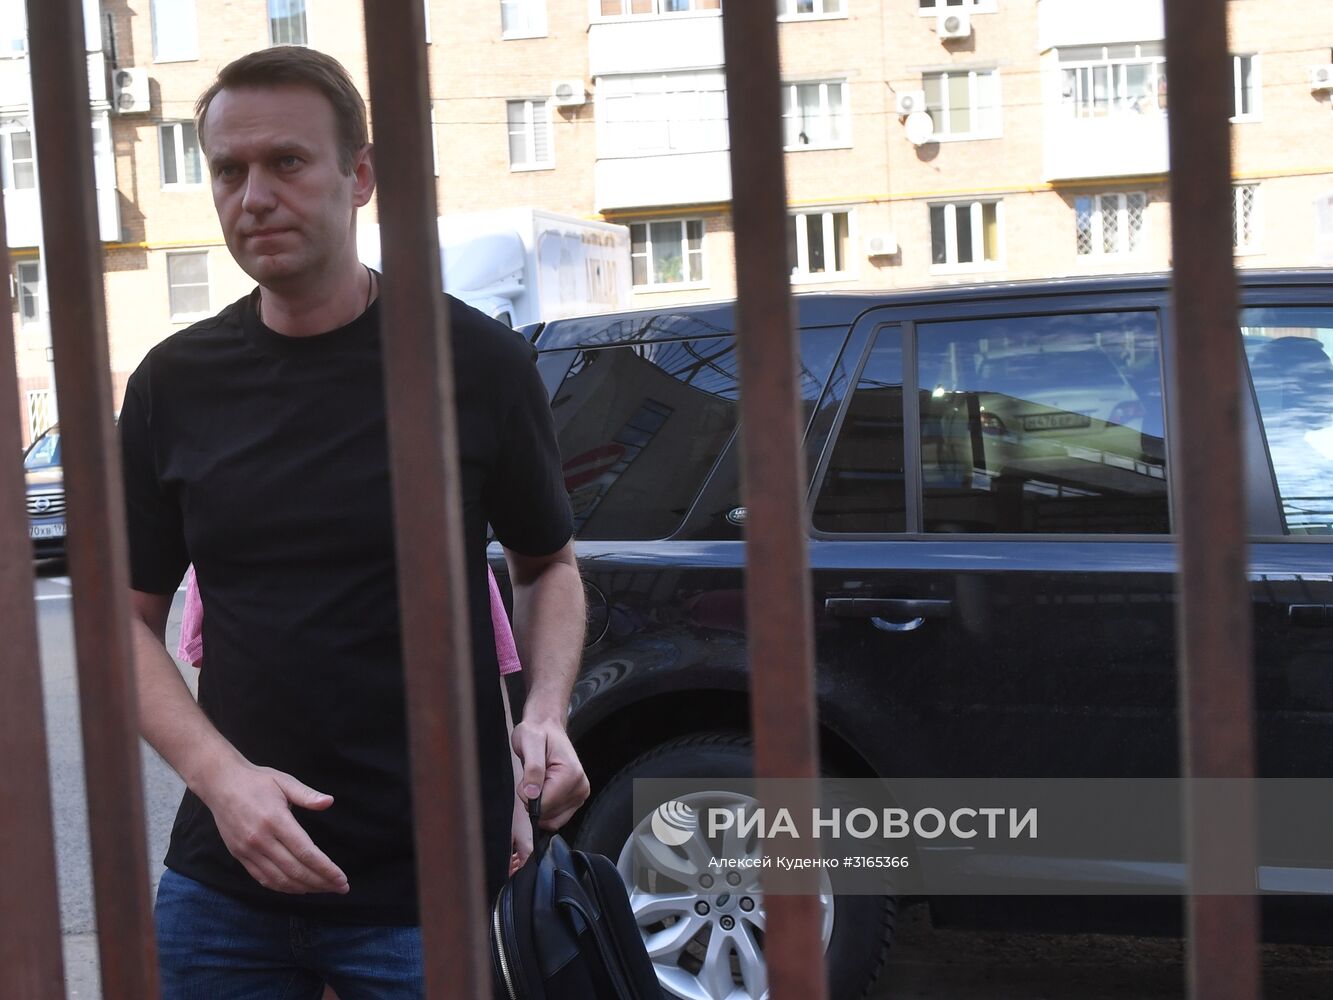 Заседание по делу А. Навального в Симоновском суде